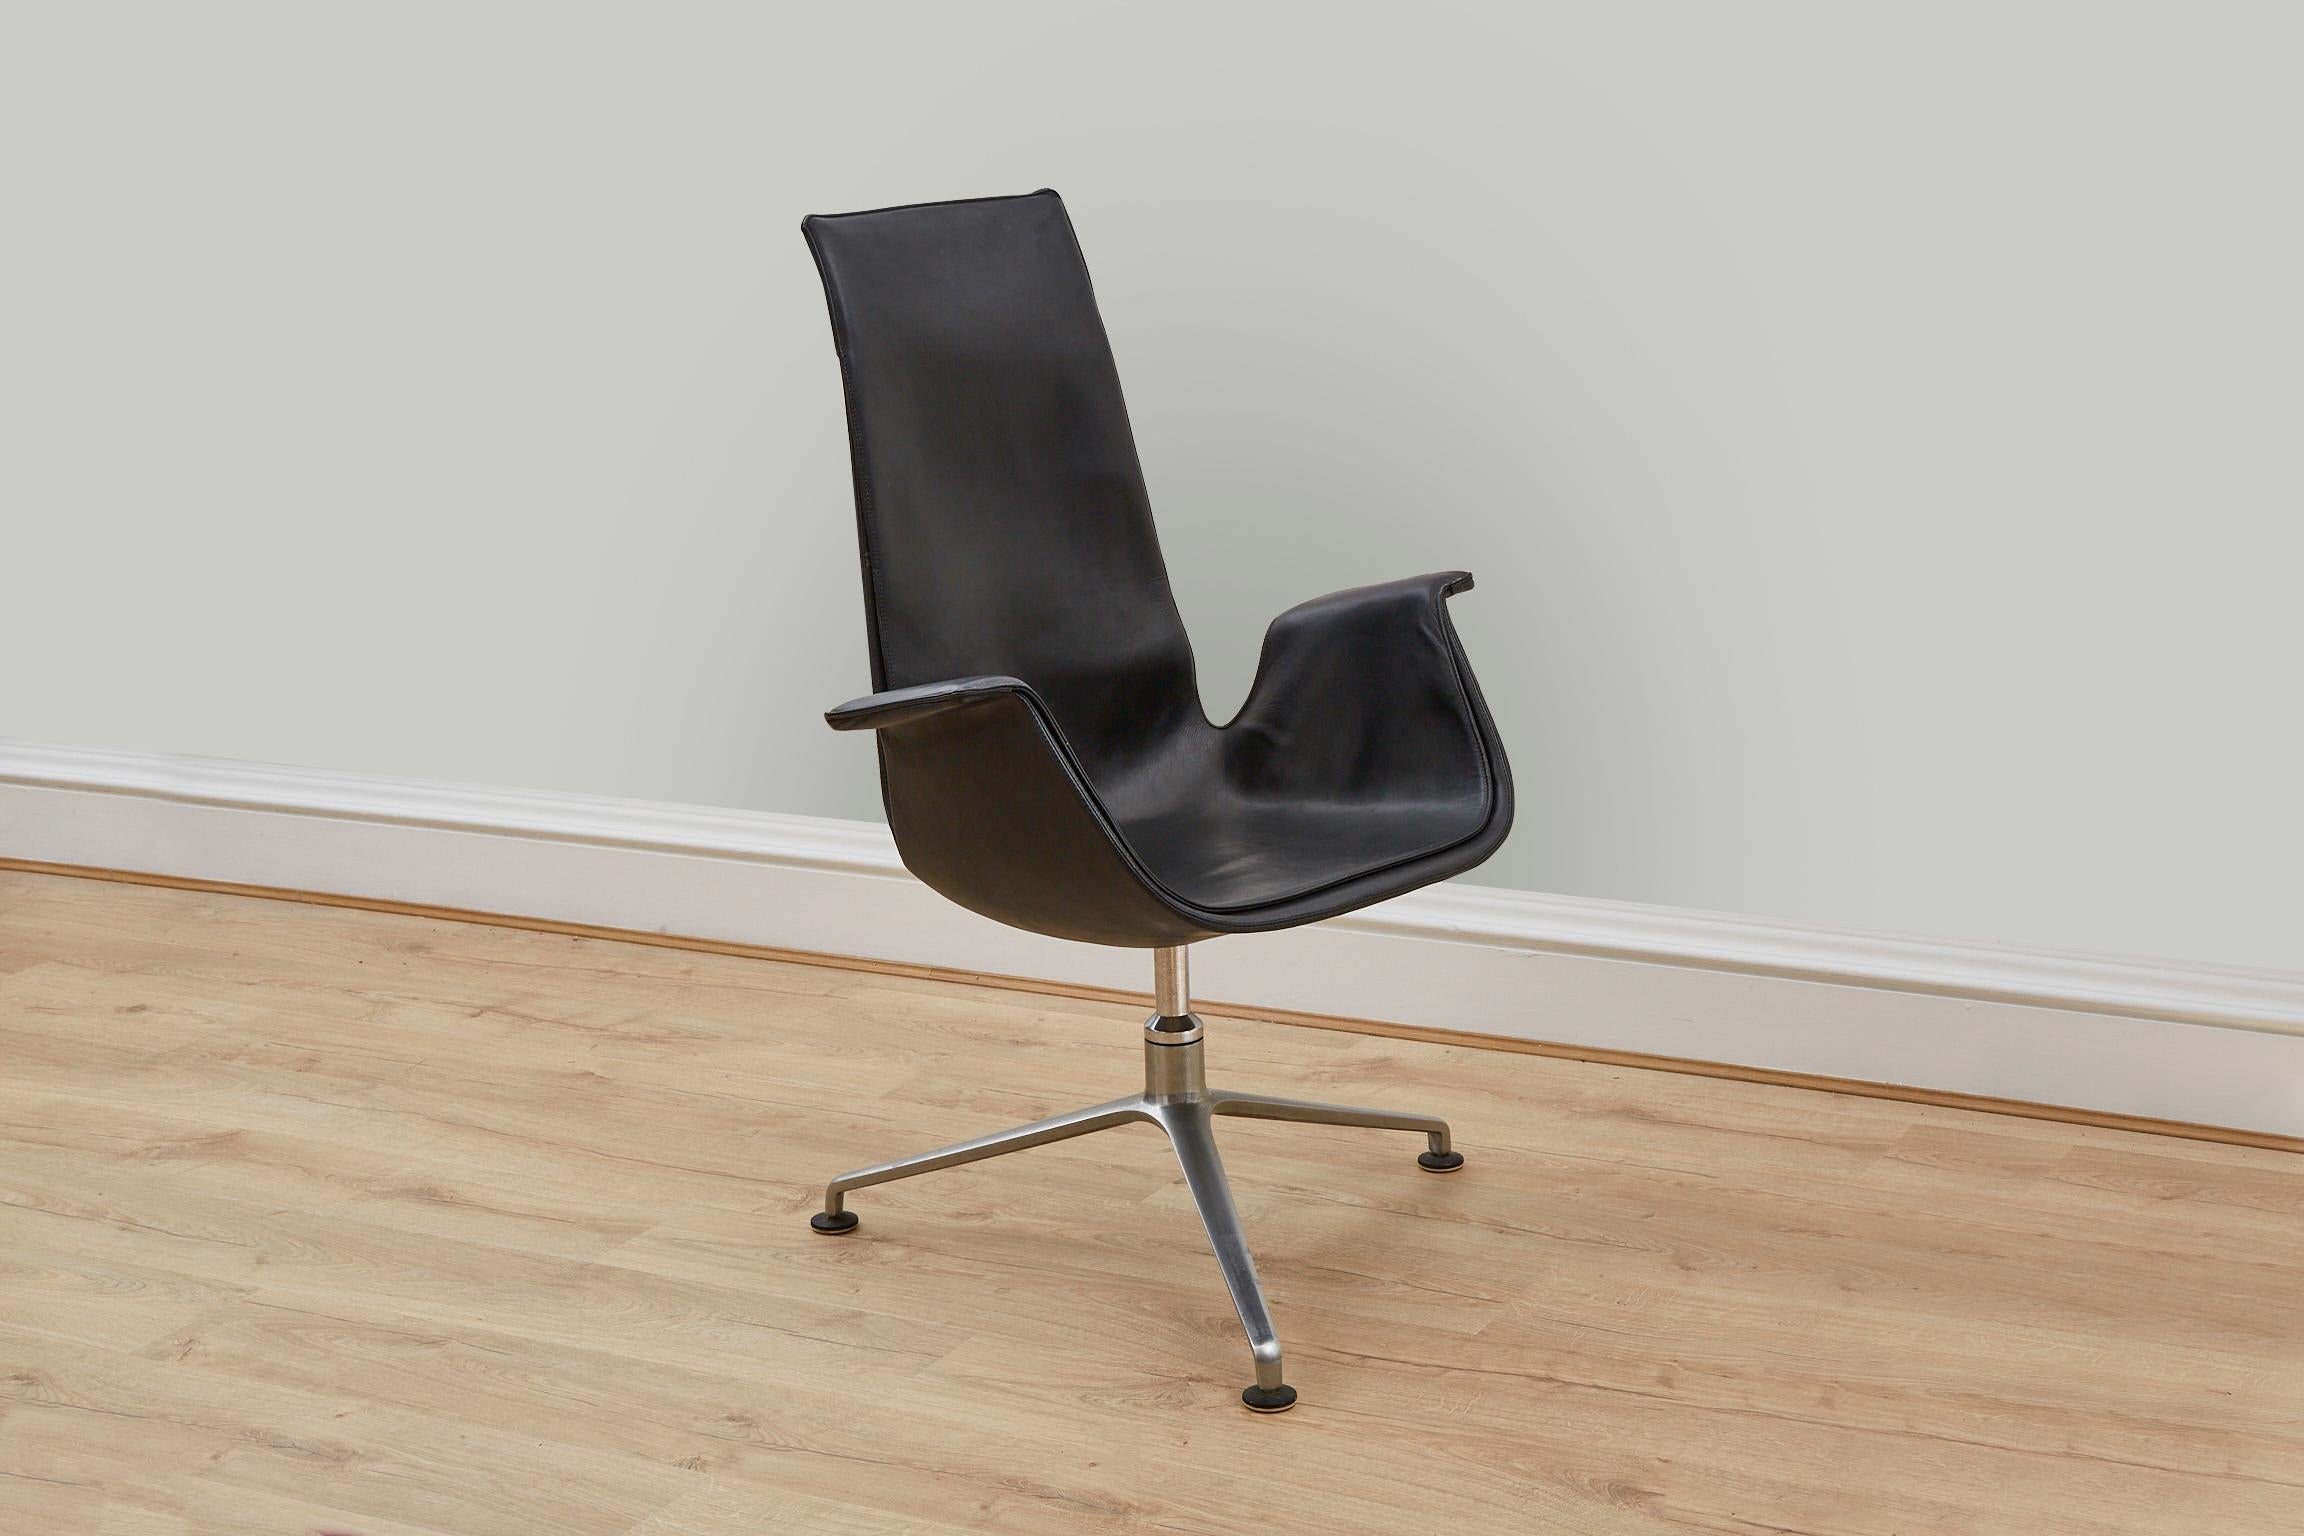 Der Bird Chair, entworfen von Preben Fabricius und Jørgen Kastholm für Kill International, ist ein Meisterwerk des modernen Designs aus der Mitte des Jahrhunderts, das nach wie vor durch seine ikonische und zeitlose Präsenz besticht.

Das